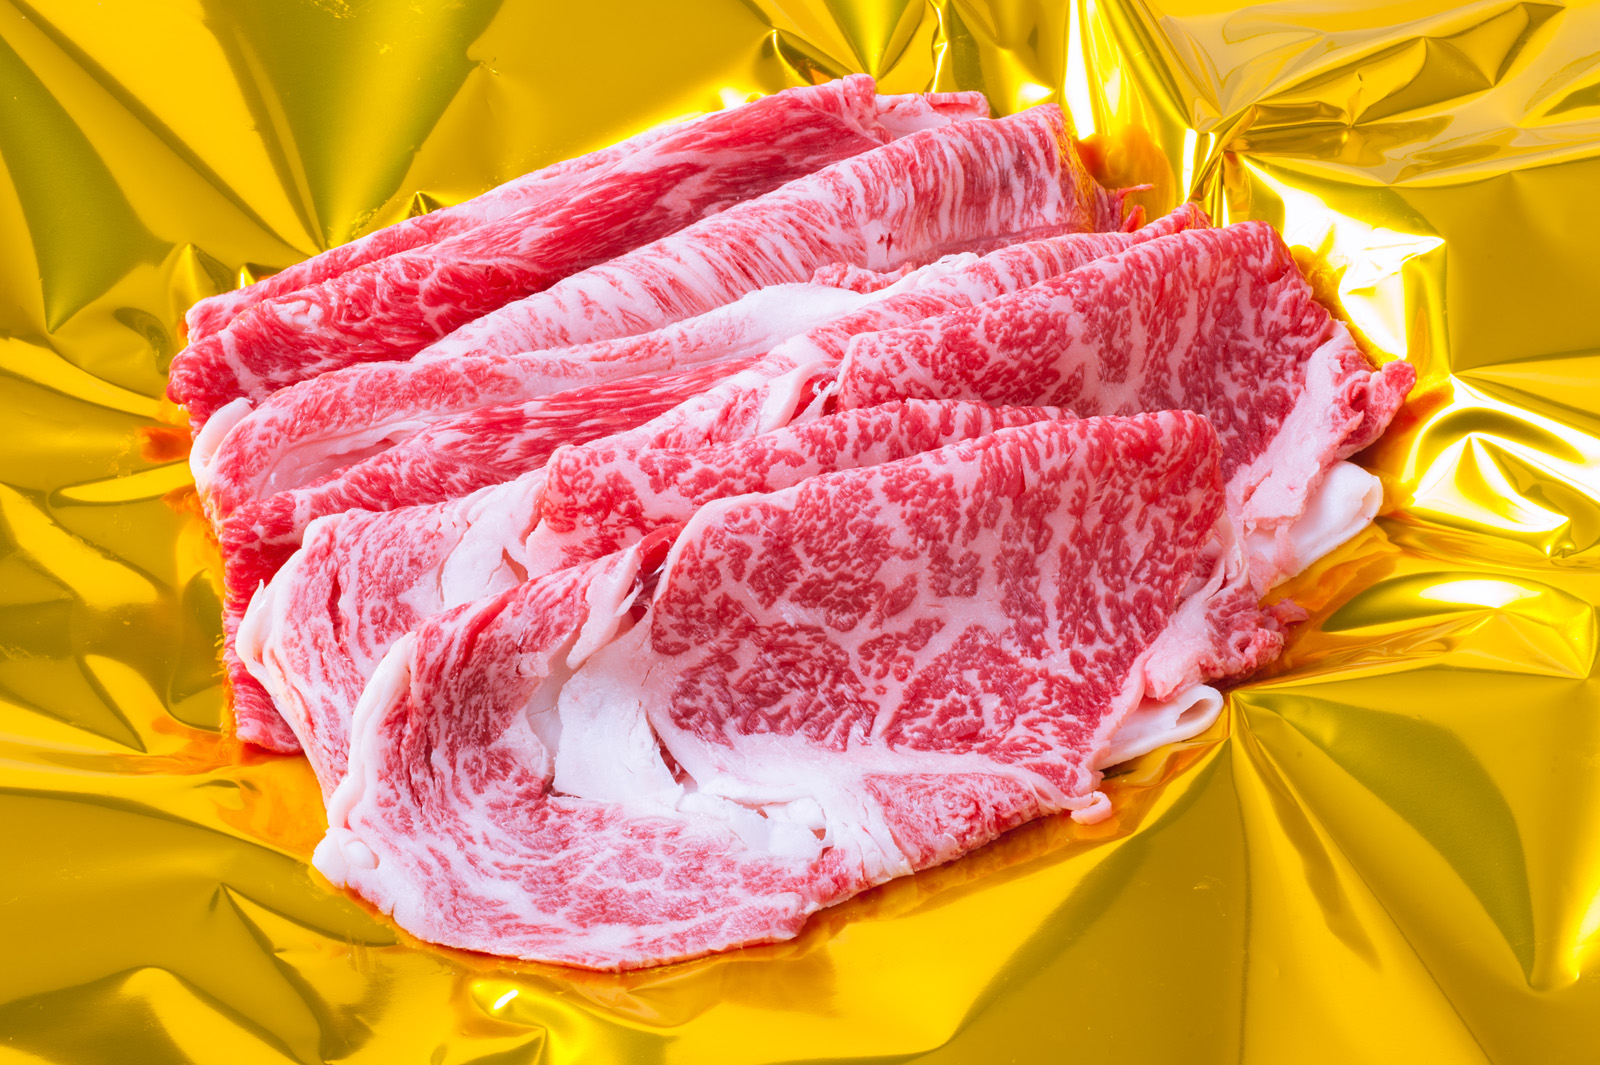 日本初のJGAP団体認証農場 肉用牛 の松阪牛をご賞味ください 超美品 K14すき焼き肩ロースモモバラ 最大93%OFFクーポン 600g